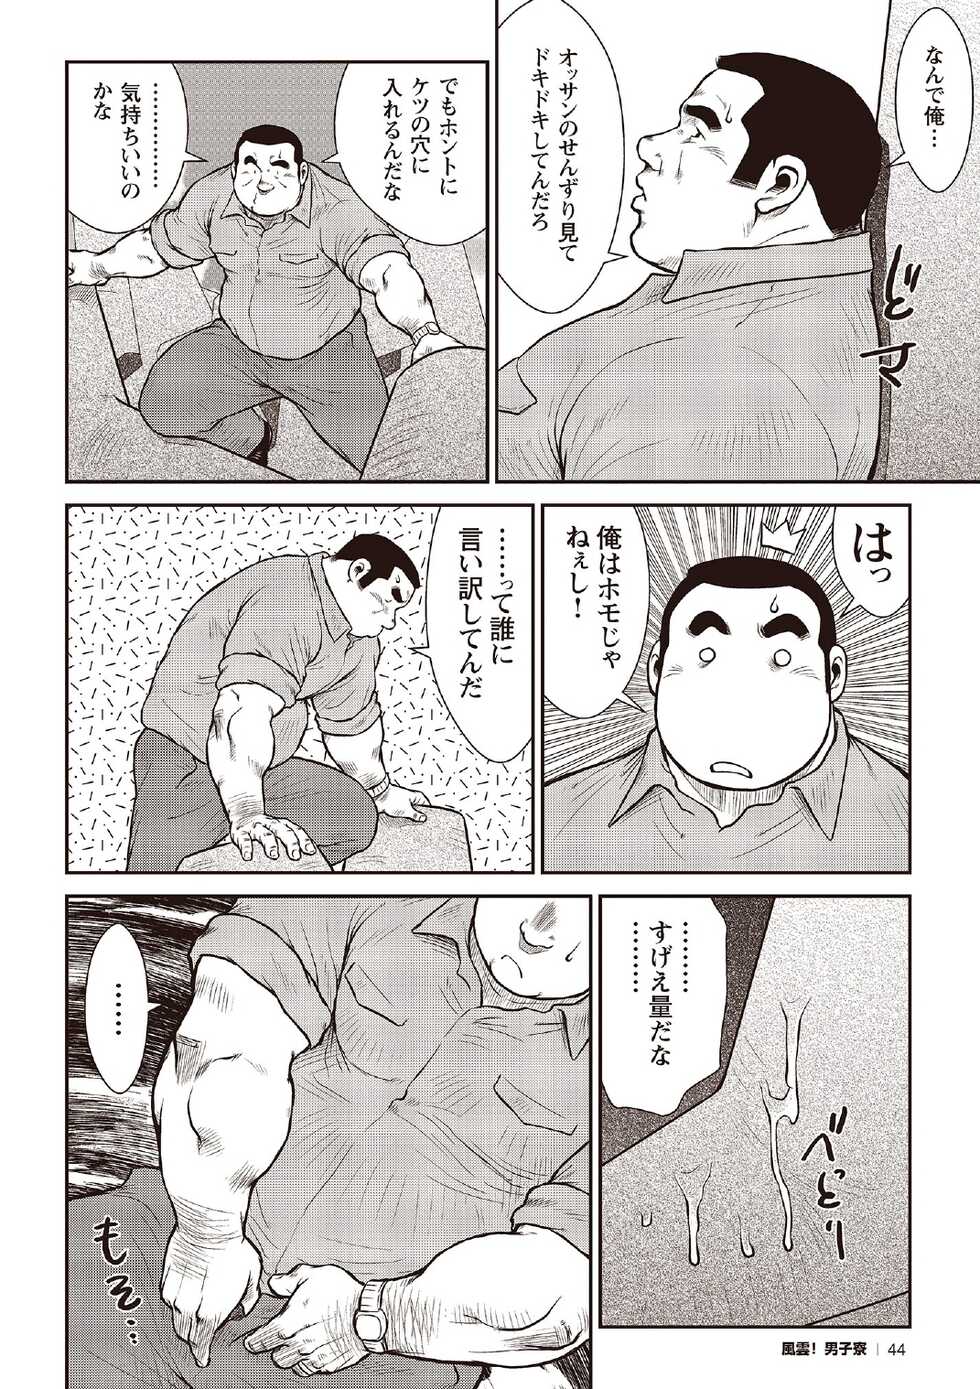 [Ebisubashi Seizou] Ebisubashi Seizou Tanpen Manga Shuu 2 Fuuun! Danshi Ryou [Bunsatsuban] PART 2 Bousou Hantou Taifuu Zensen Ch. 1 + Ch. 2 [Digital] - Page 22